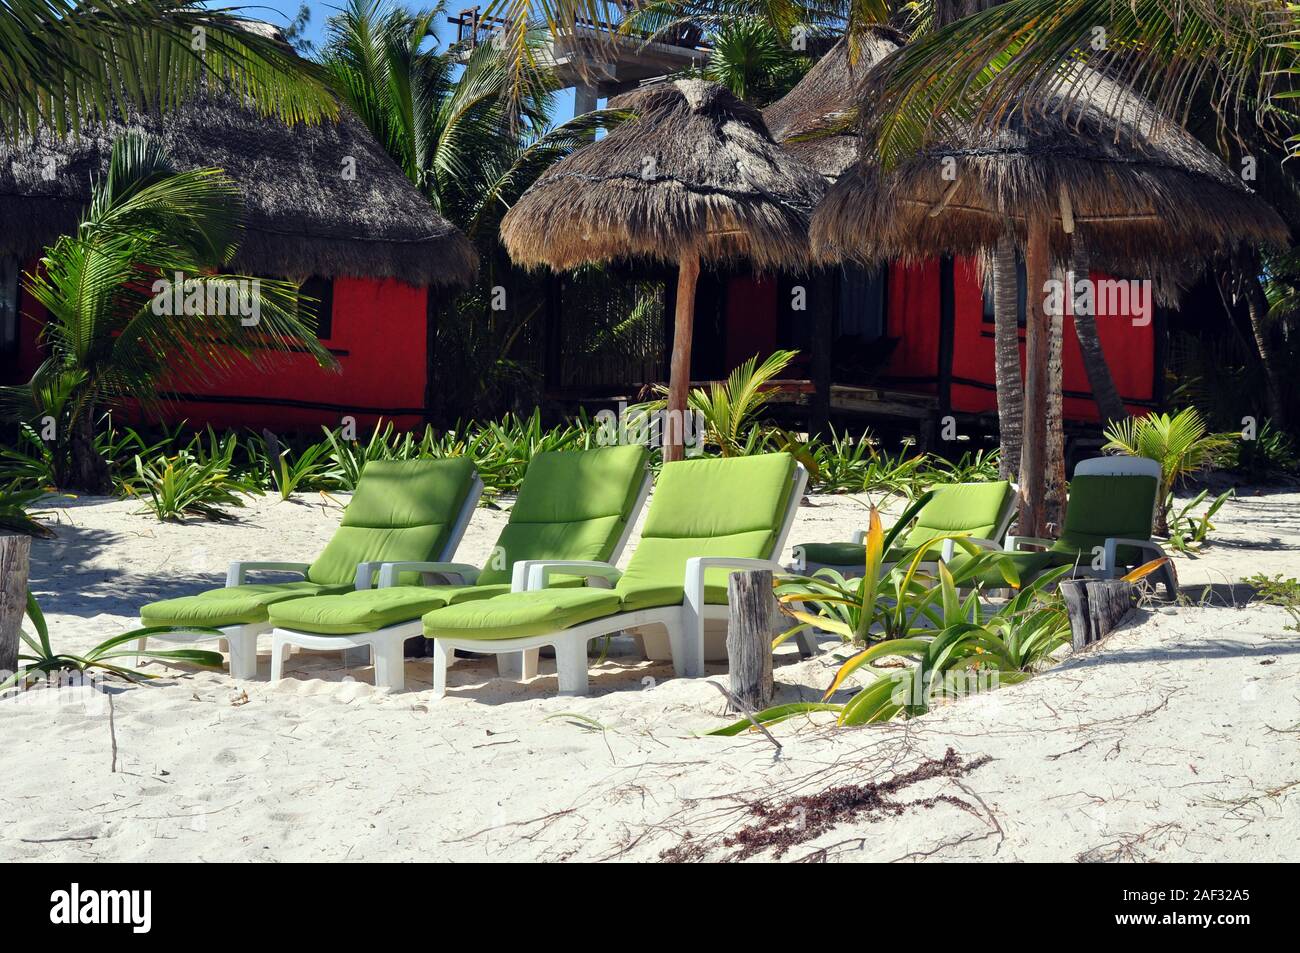 Grüne Liegen in den Sand mit zwei Orange Beach Hütten und strohgedeckten Sonnenschirmen. Stockfoto